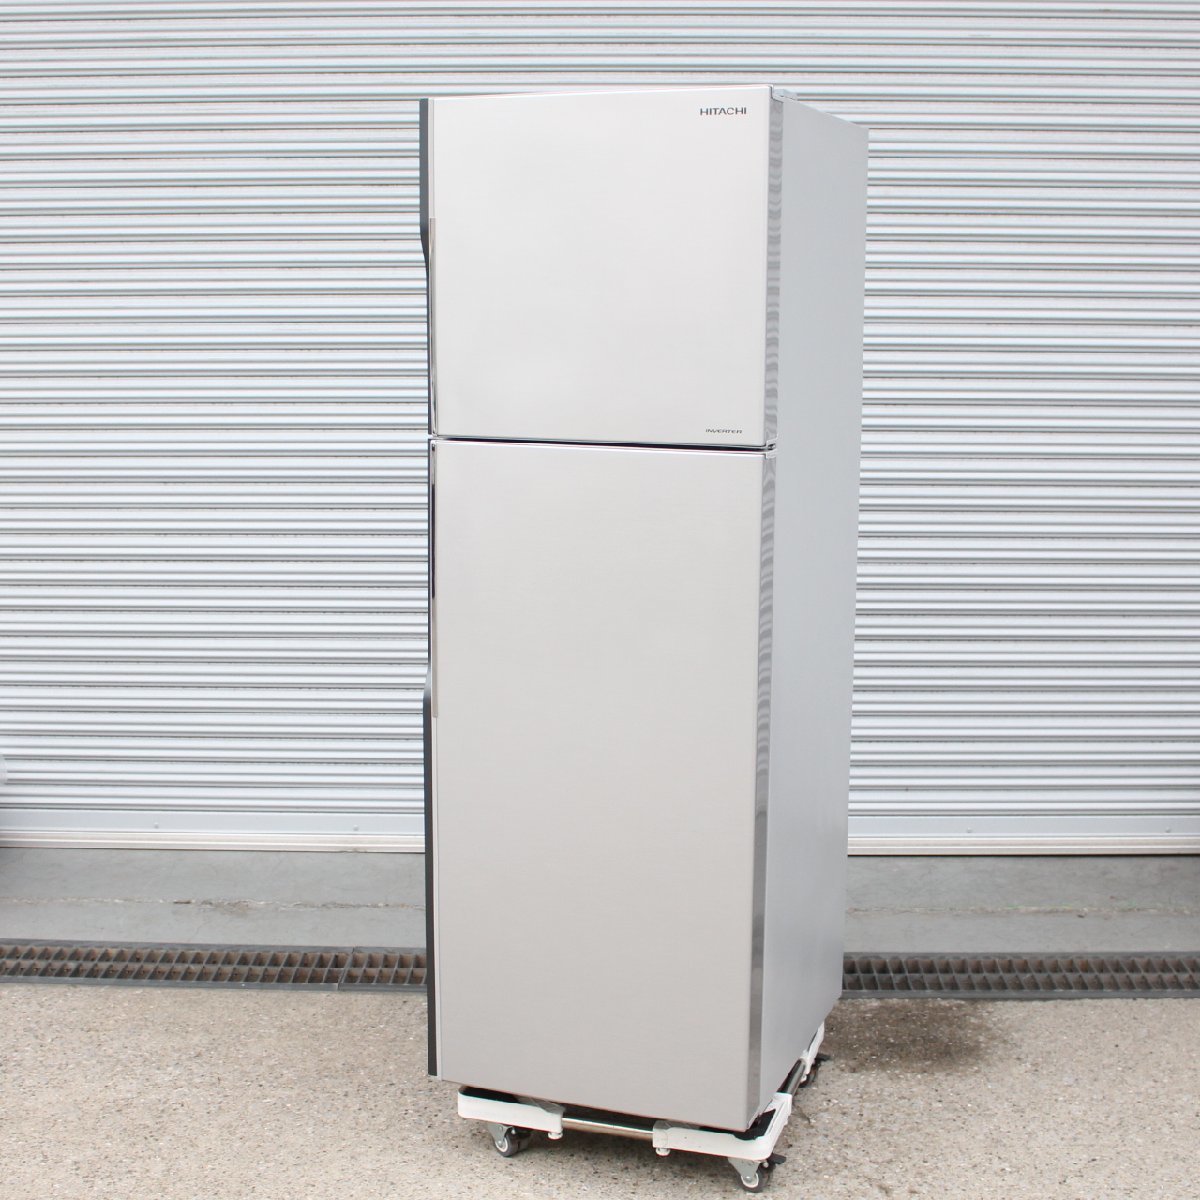 川崎市宮前区にて 日立 冷凍冷蔵庫 R-23JA(S) 2019年製 を出張買取させて頂きました。